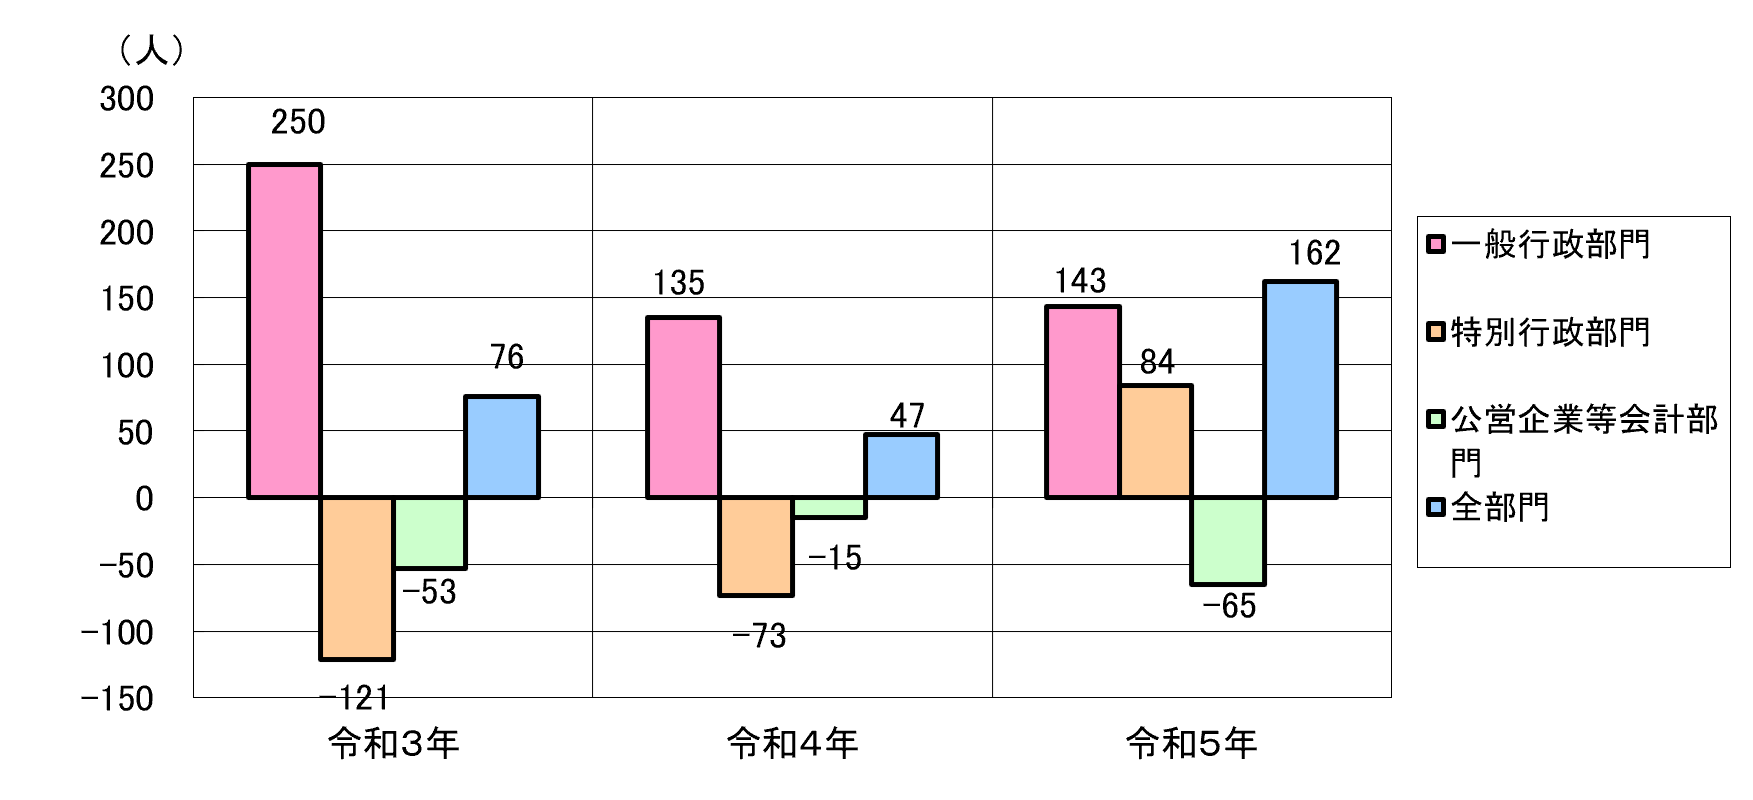 府内市町村（大阪市・堺市除く、一部事務組合等含む）の部門別職員数対前年度増減の状況表